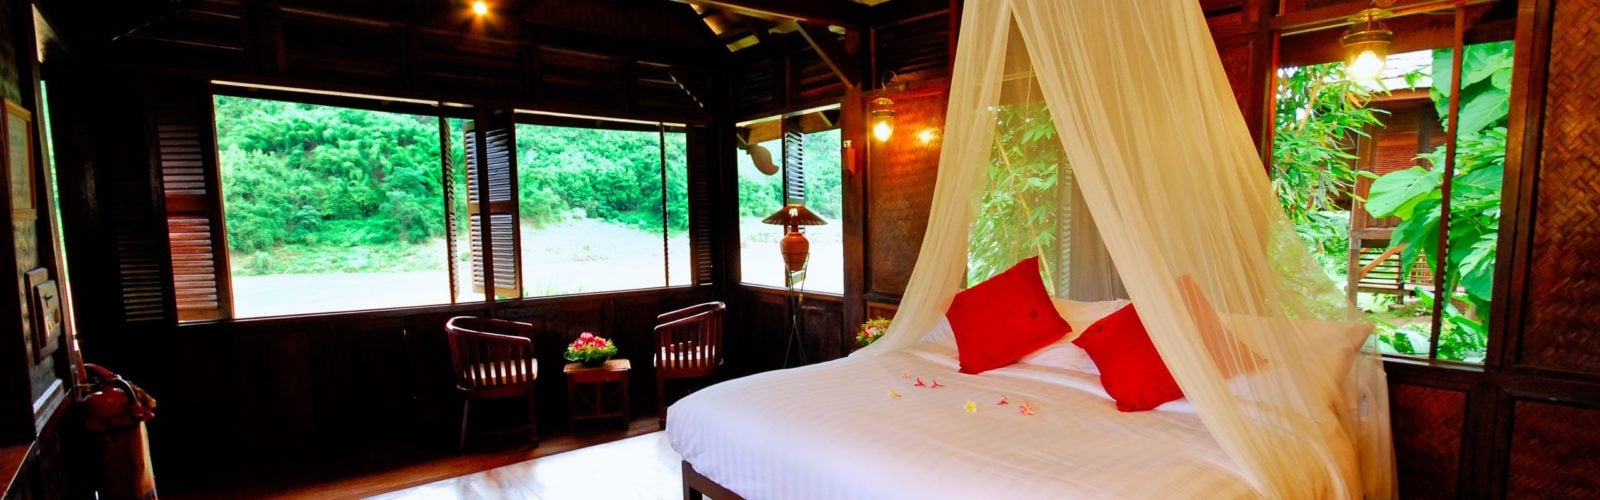 Luang Say Lodge Luxury Hotel In Luang Prabang Jacada Travel - 